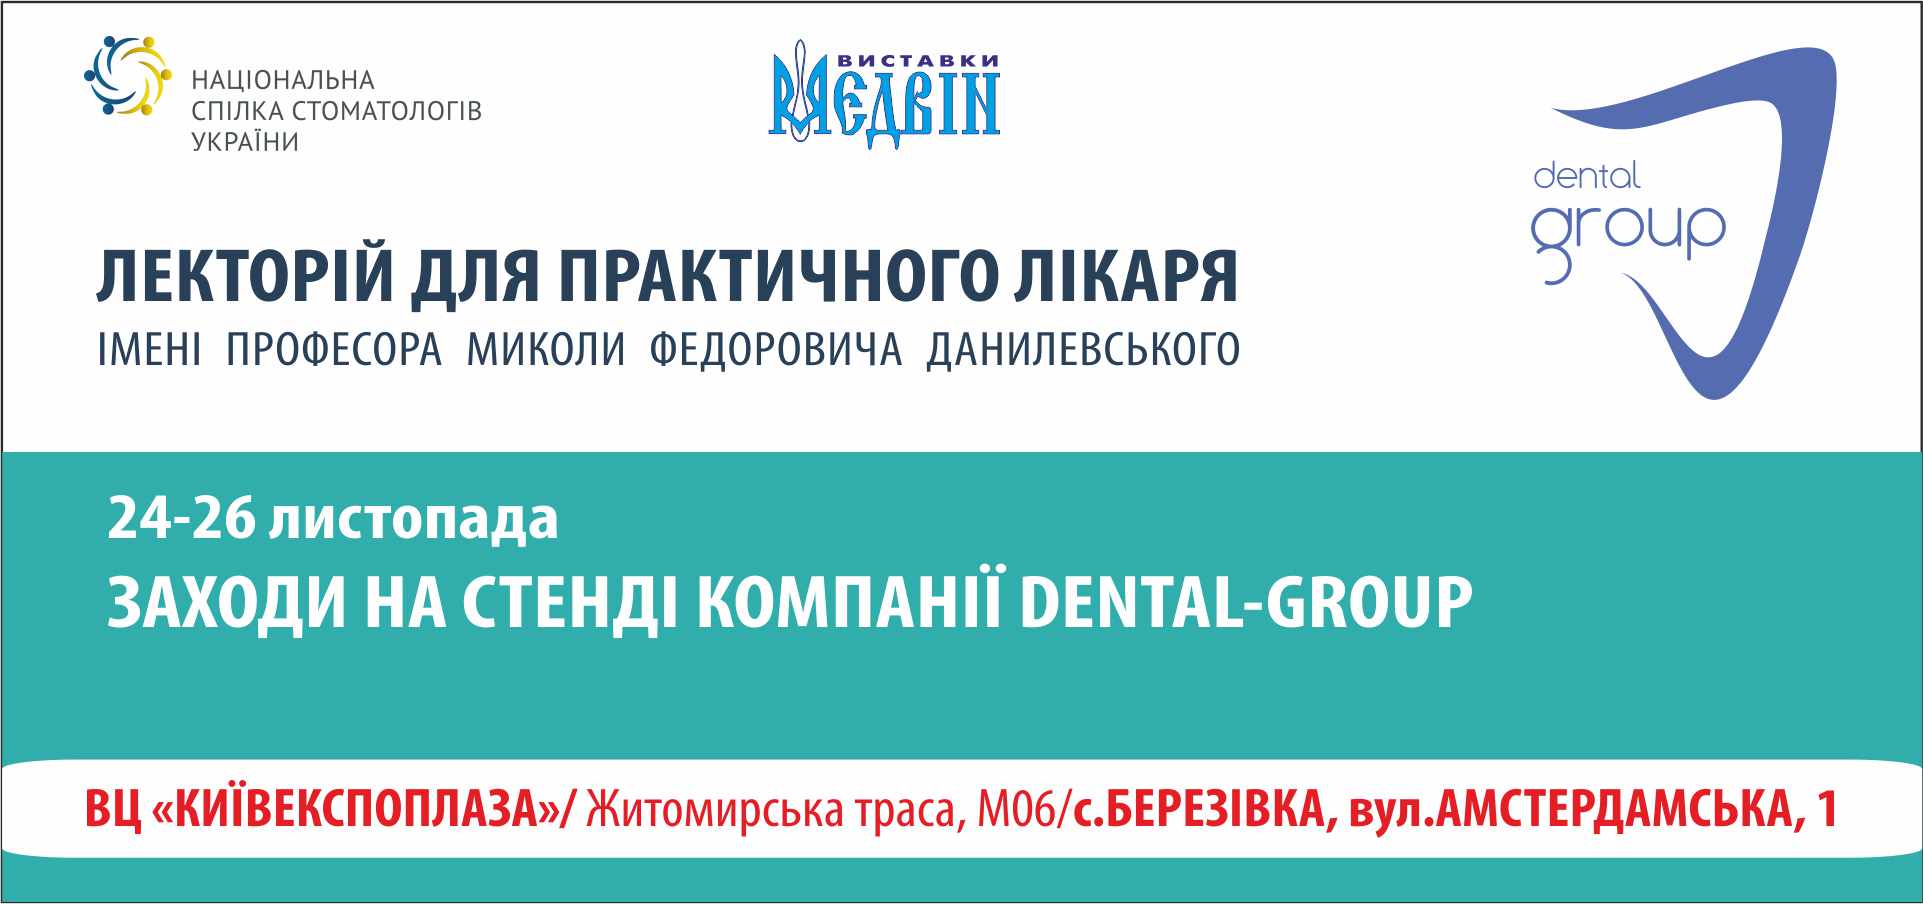 Мероприятия на стенде компании Dental-Group